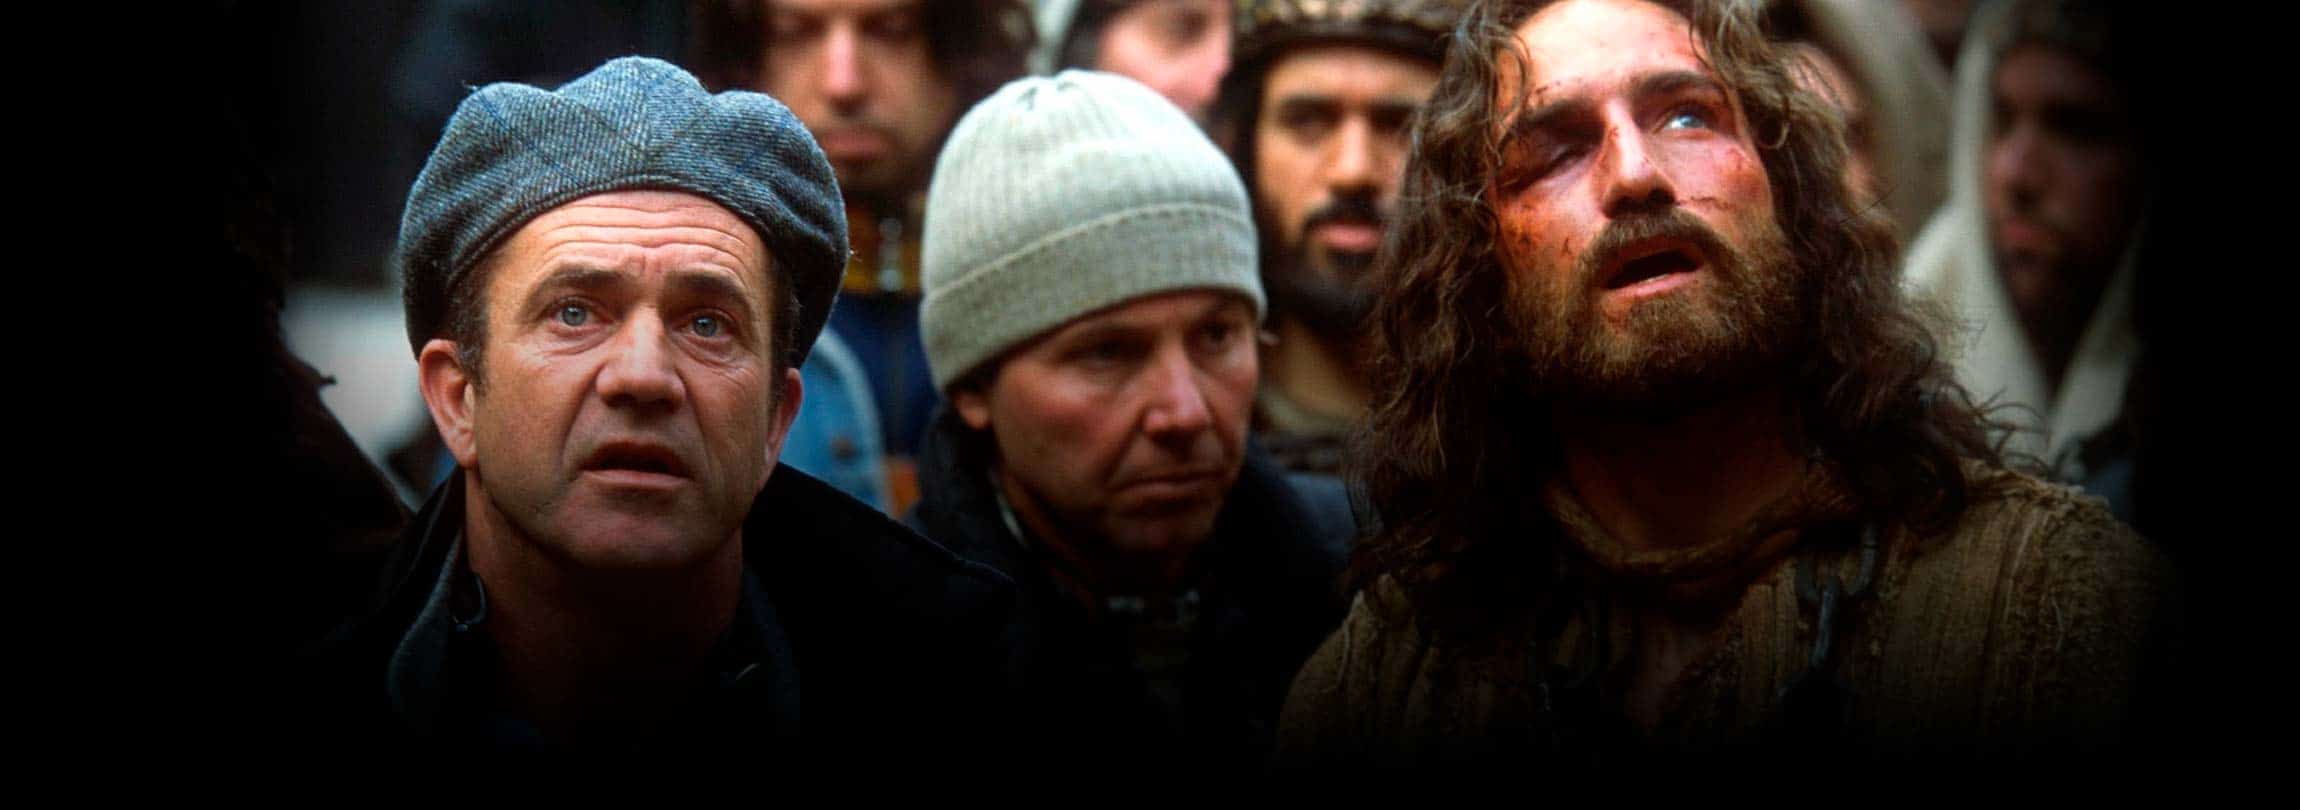 Por que vale a pena assistir de novo à “Paixão” de Mel Gibson